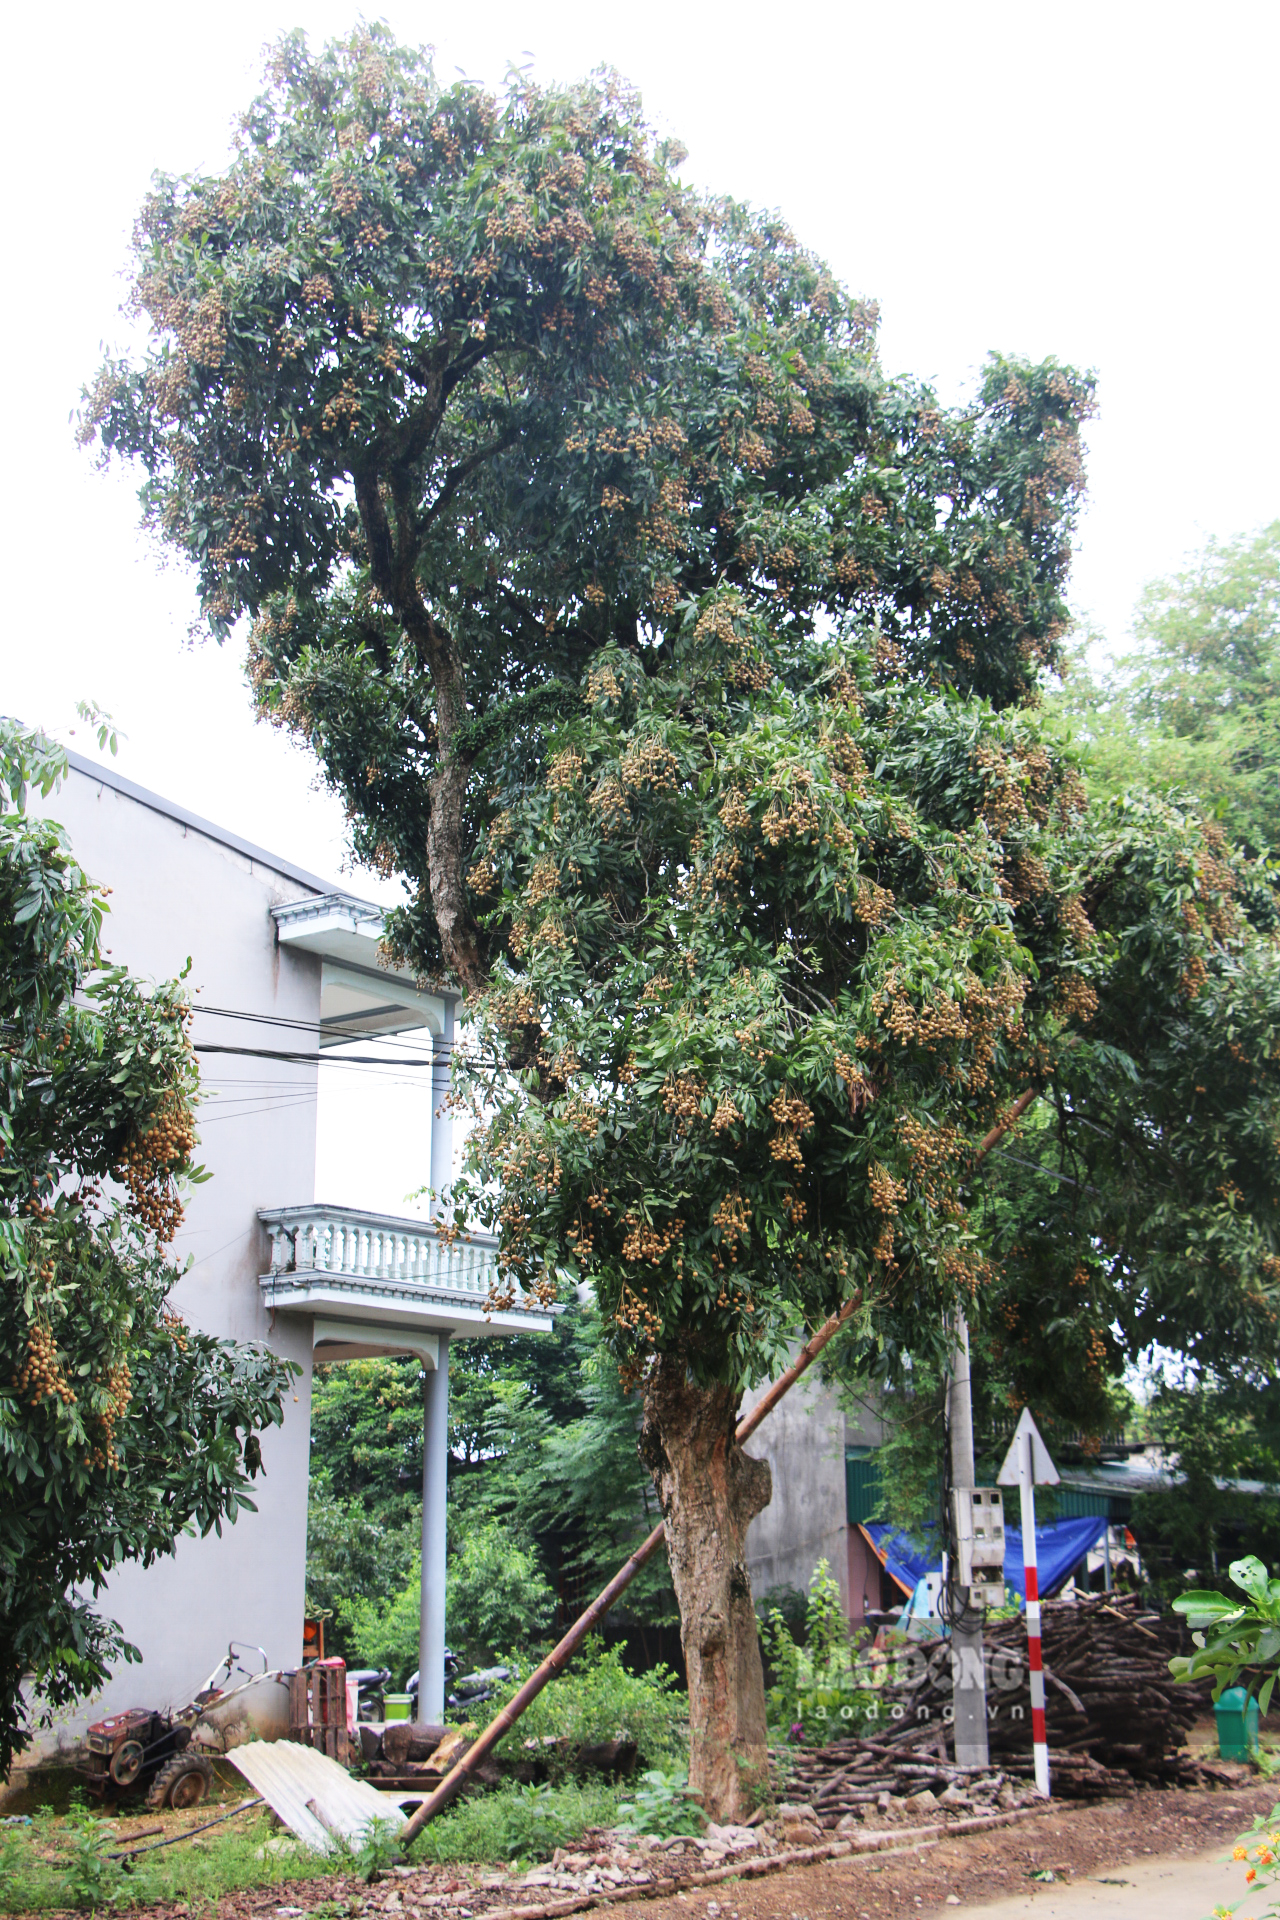 Theo người dân địa phương, cây nhãn nhà ông Trịnh Văn Kền ở thôn 3 là cây nhãn cổ với tuổi đời gần trăm năm hiện là cây nhãn cổ đẹp nhất của xã. Từ cây nhãn này đã được chiết cành, nhân giống ở nhiều nơi.